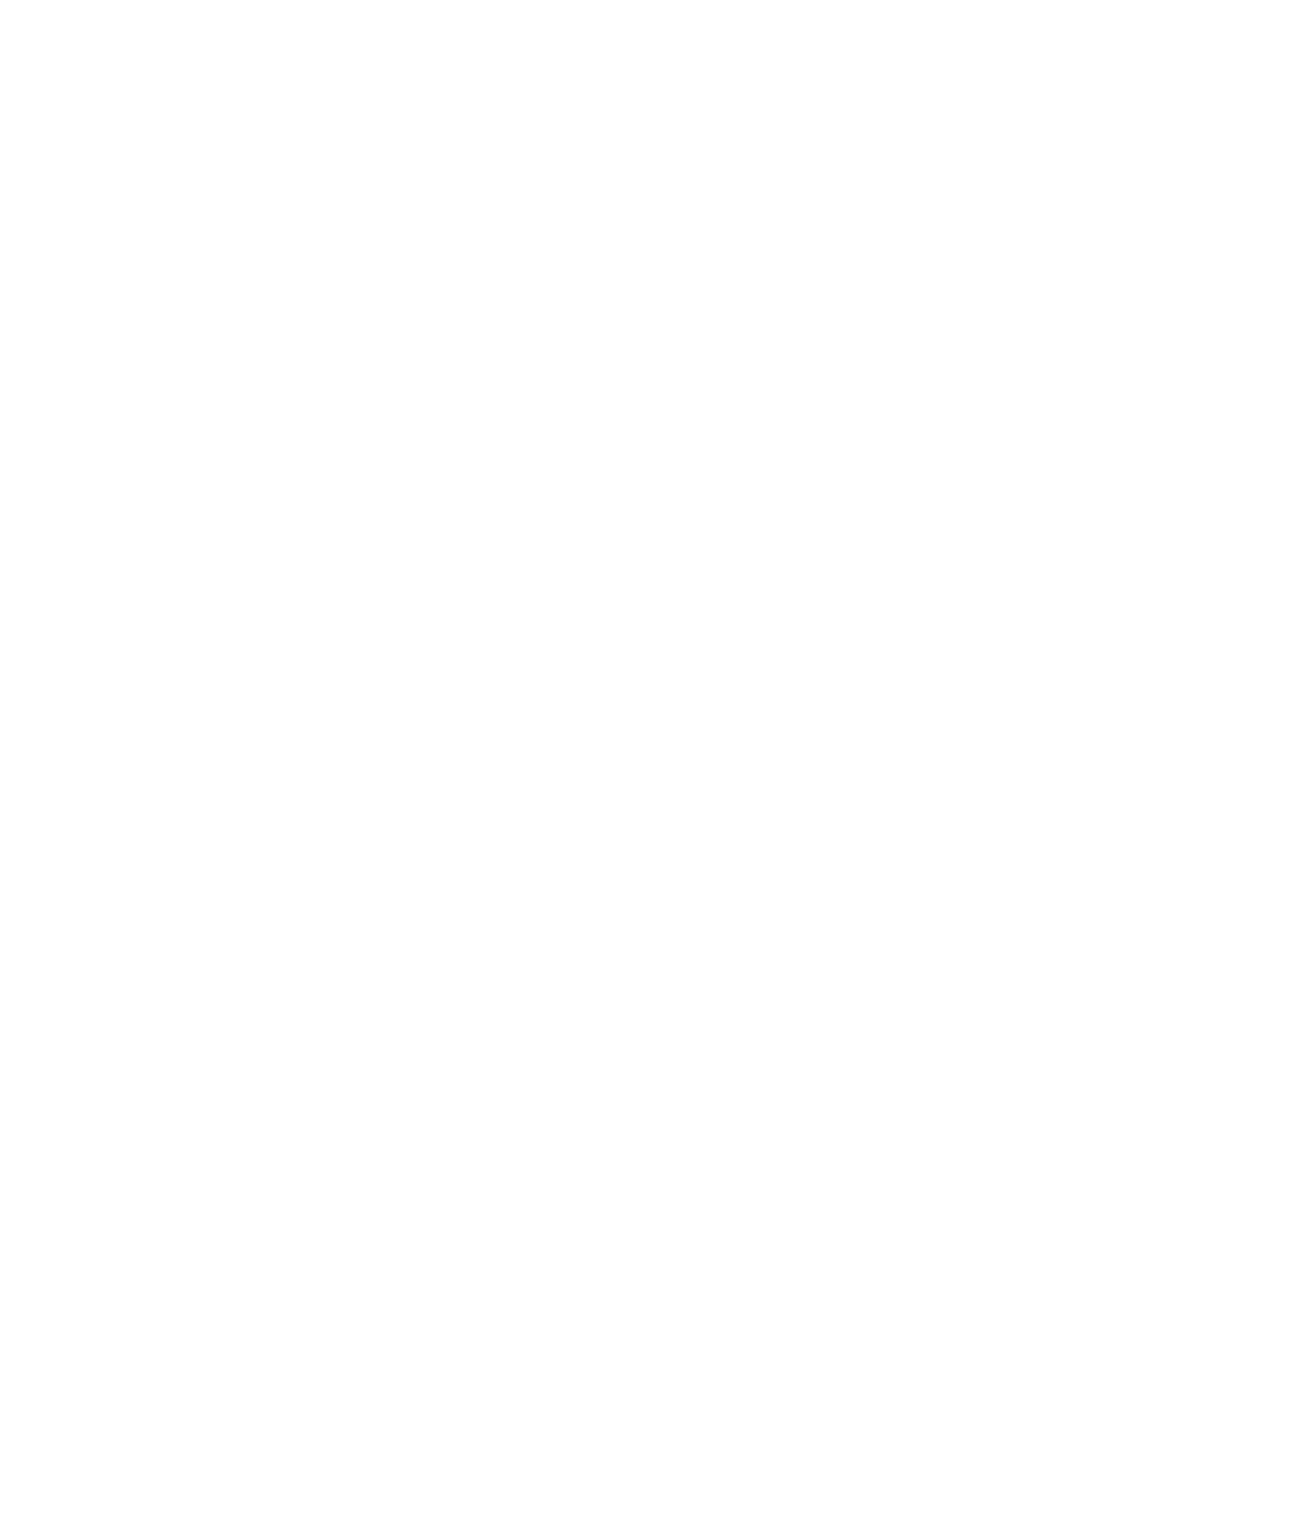 Webuild S.p.A. logo for dark backgrounds (transparent PNG)